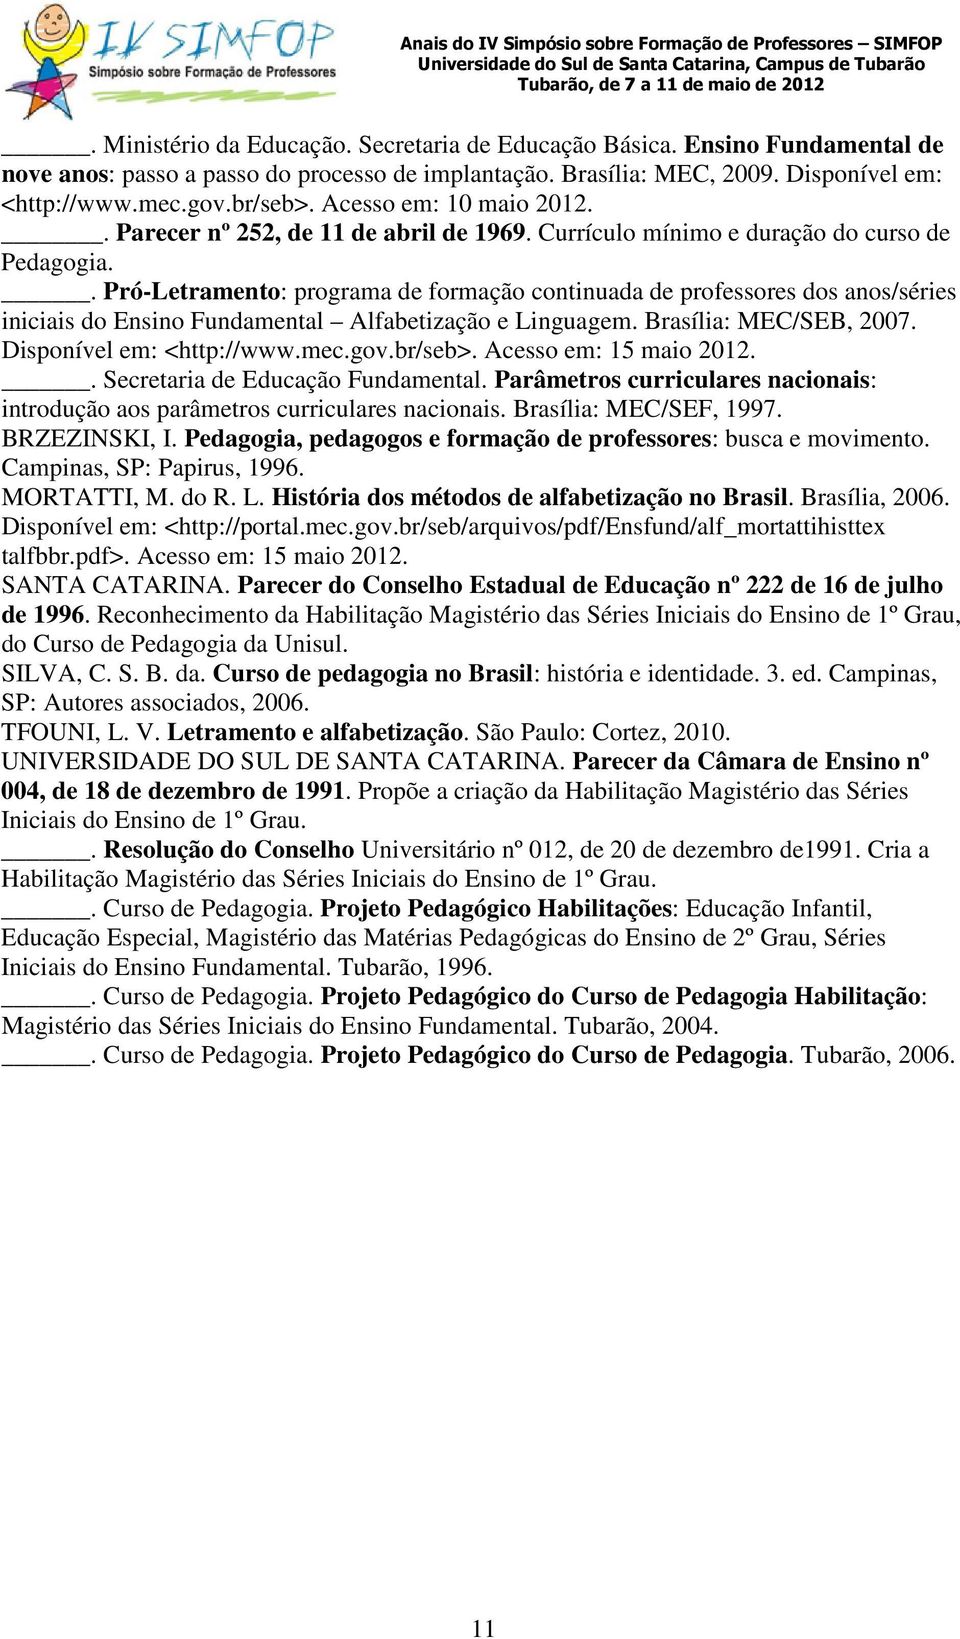 . Pró-Letramento: programa de formação continuada de professores dos anos/séries iniciais do Ensino Fundamental Alfabetização e Linguagem. Brasília: MEC/SEB, 2007. Disponível em: <http://www.mec.gov.